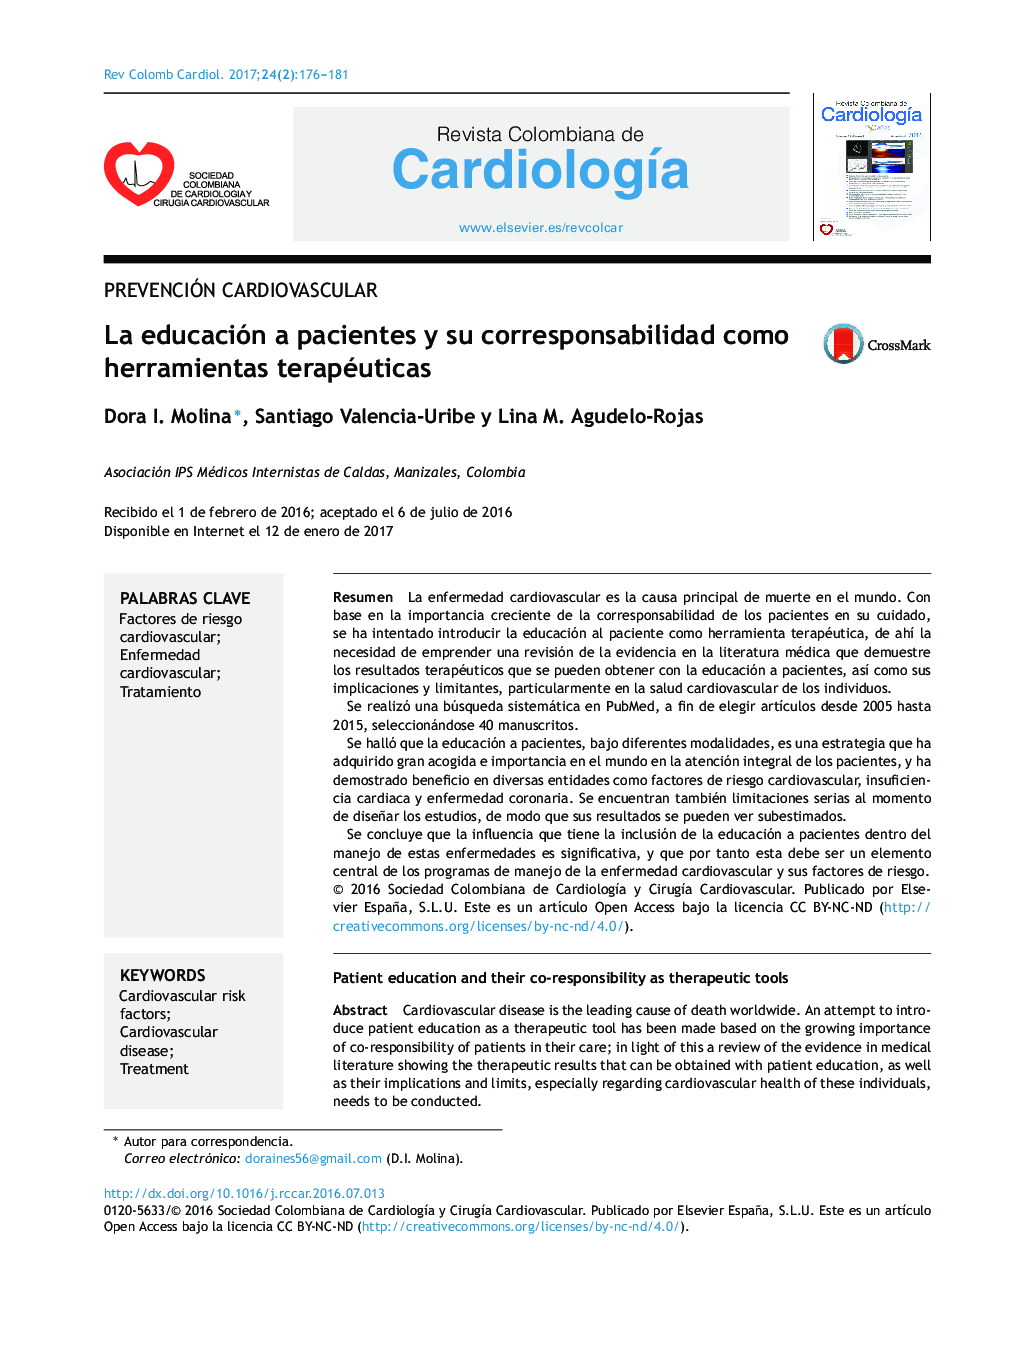 Prevención CardiovascularLa educación a pacientes y su corresponsabilidad como herramientas terapéuticasPatient education and their co-responsibility as therapeutic tools